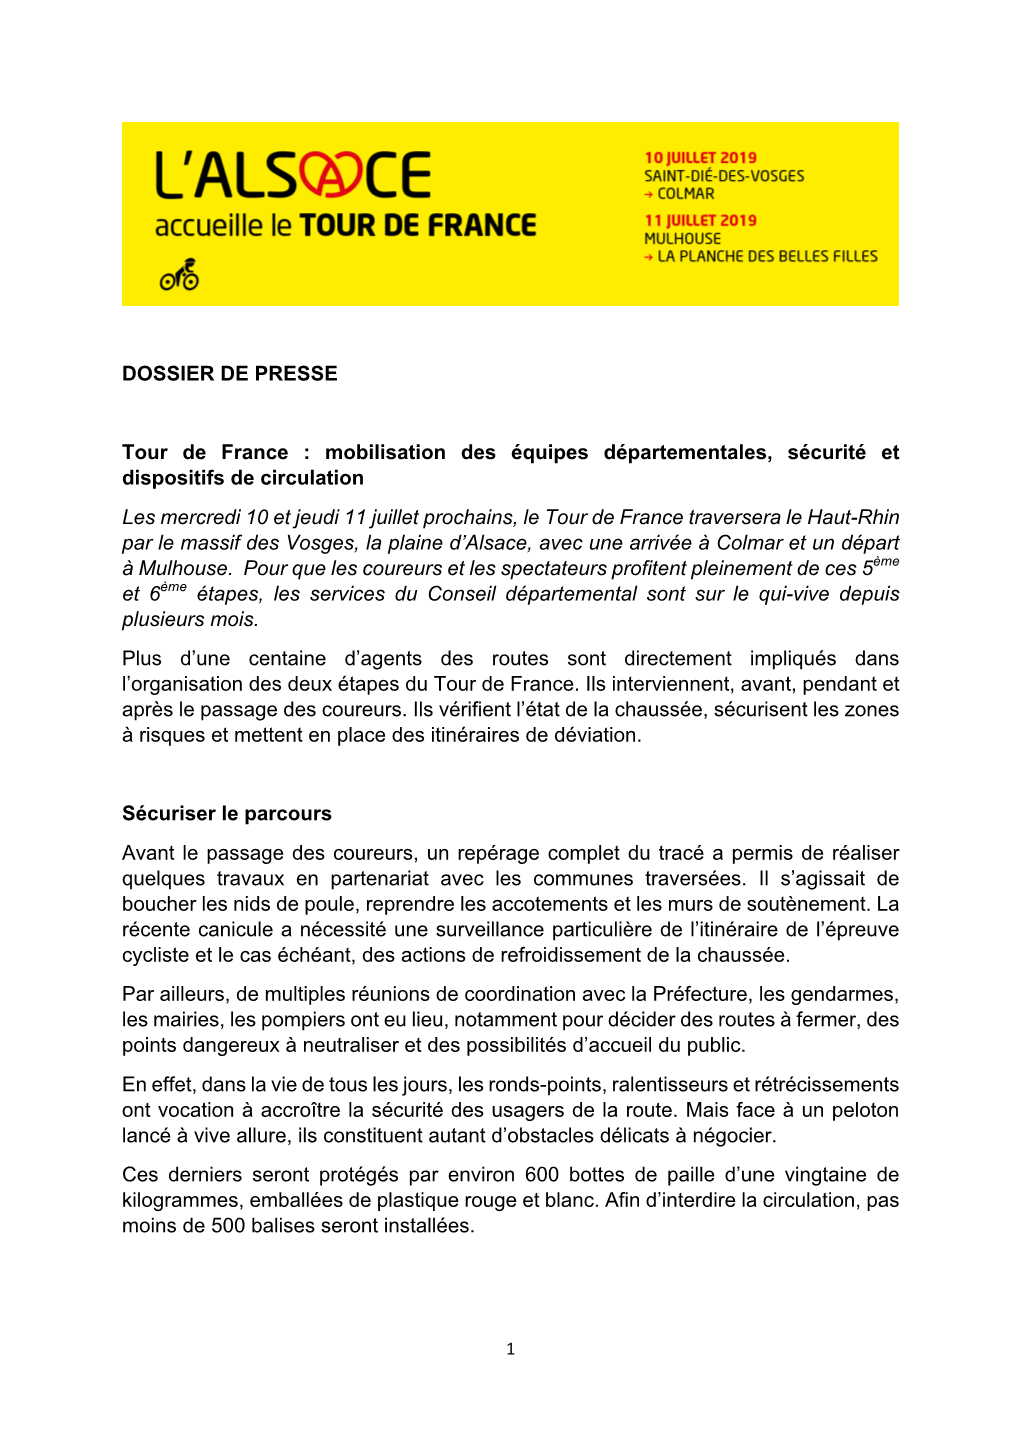 DOSSIER DE PRESSE Tour De France